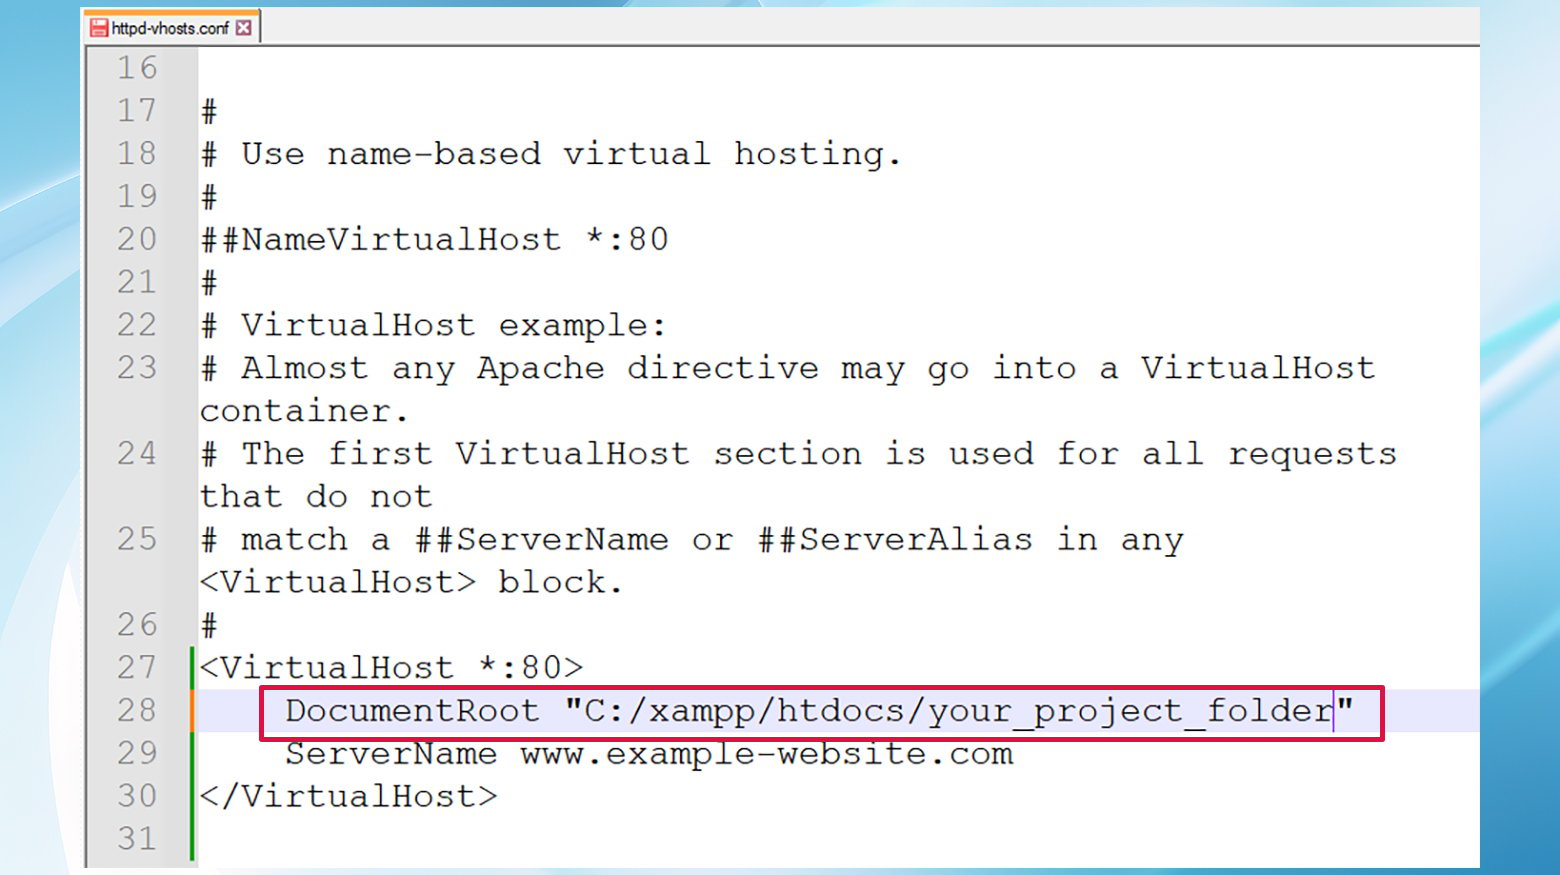 การอัพเดต DocumentRoot ในไฟล์ httpd-vhosts.conf สามารถแก้ไขข้อผิดพลาด localhost/index.php ได้